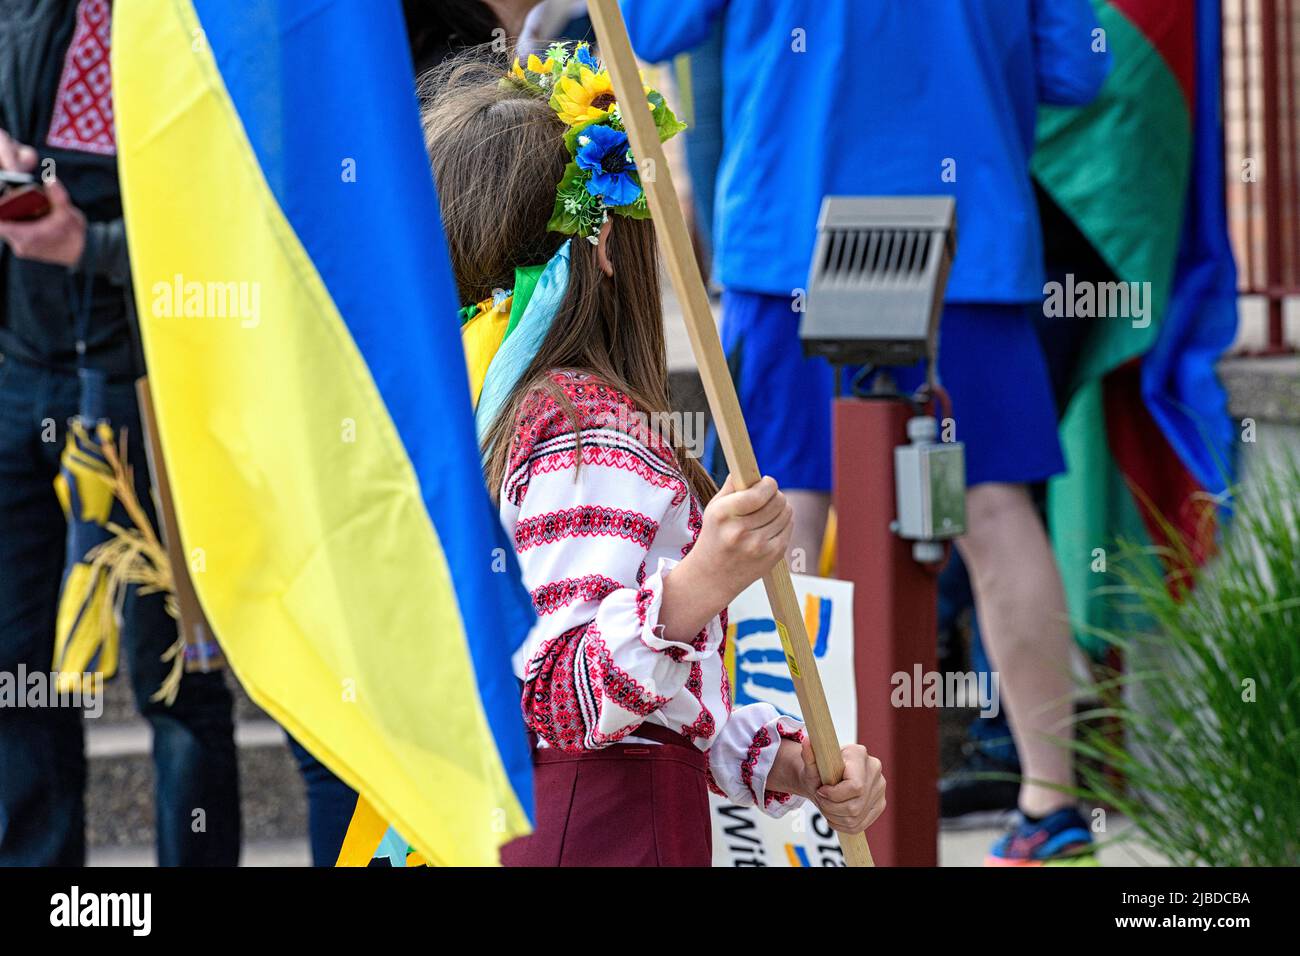 Ein junges Mädchen, das einen Vinok oder Blumenkranz trägt und eine ukrainische Flagge bei einer Kundgebung oder einem marsch für den Frieden in der Ukraine hält. Calgary, Alberta, Kanada Stockfoto